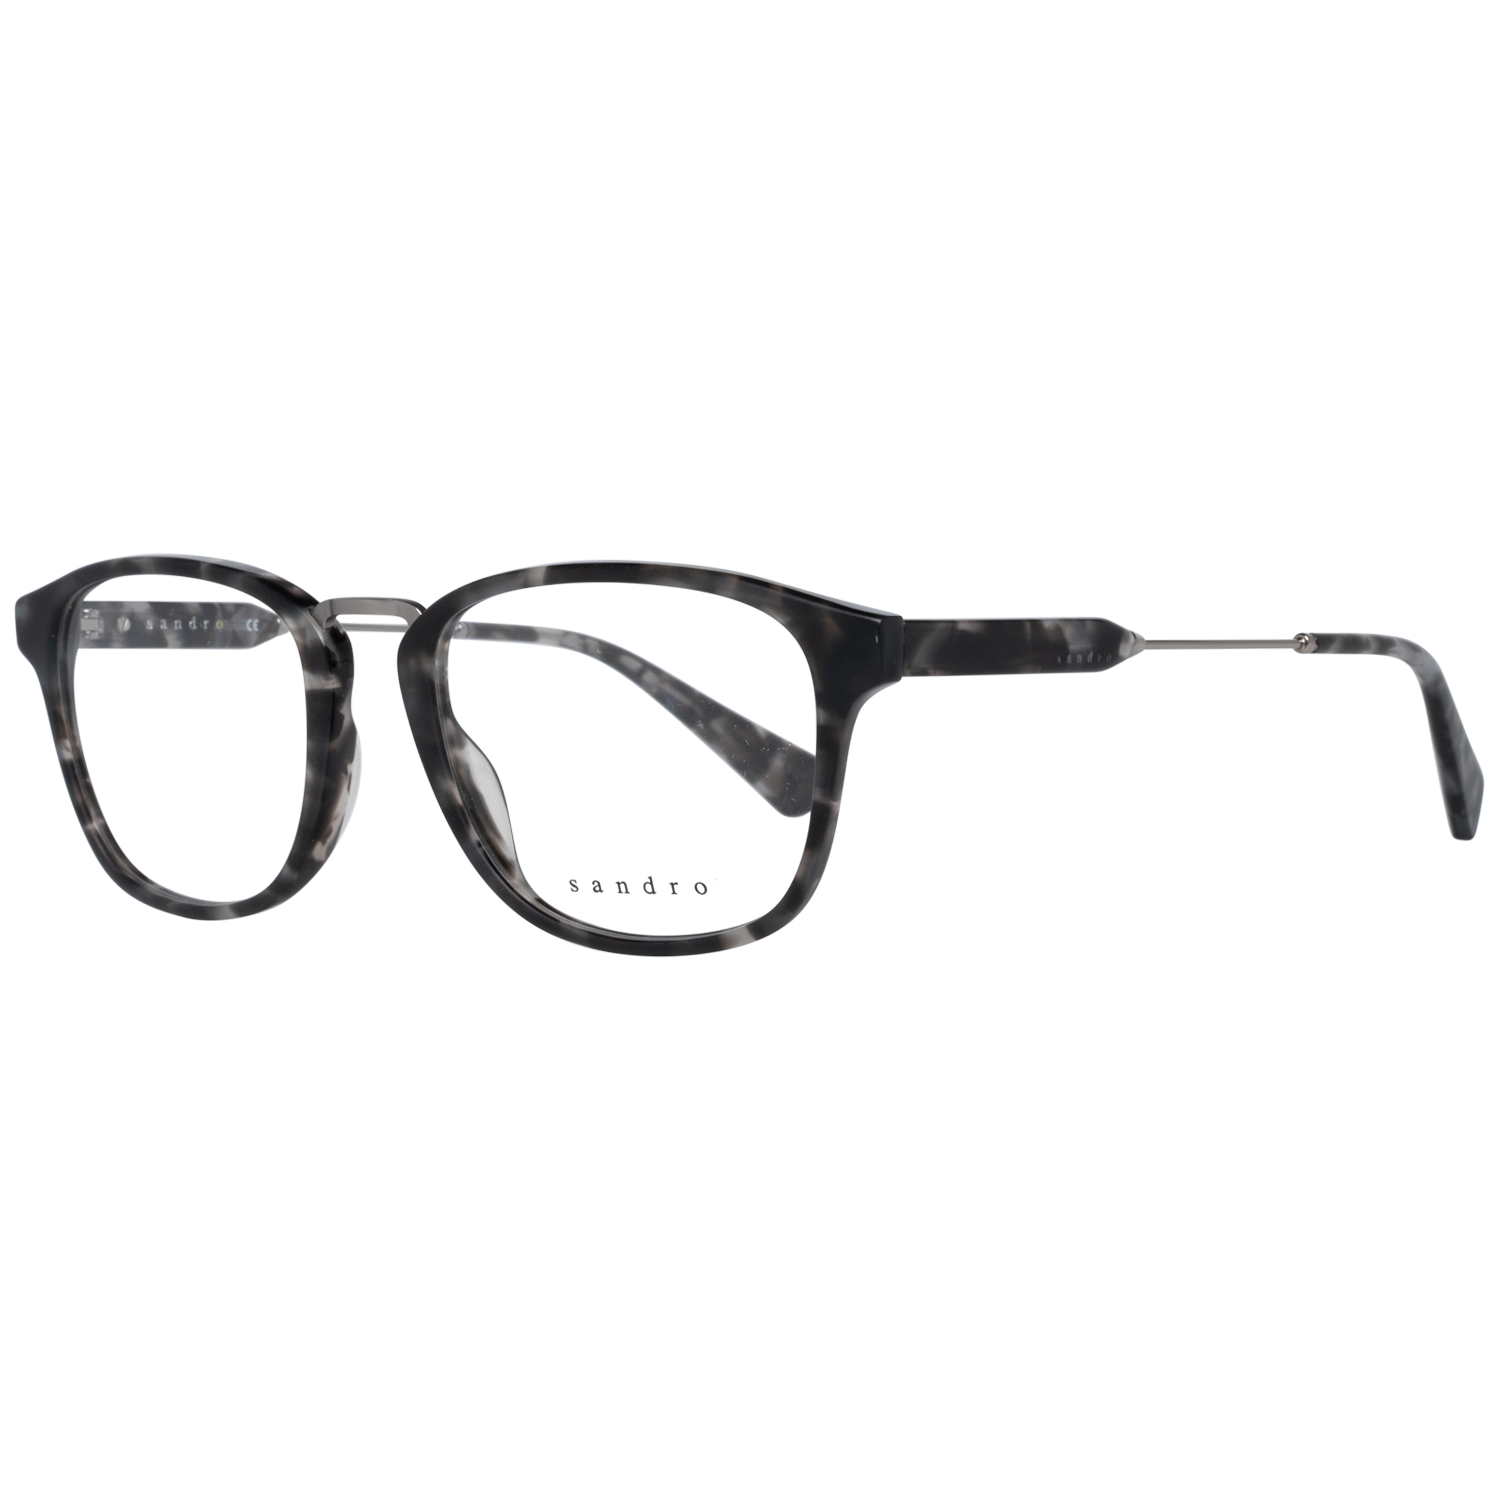 Sandro Frames Sandro Optical Frame SD1007 207 51 Eyeglasses Eyewear UK USA Australia 